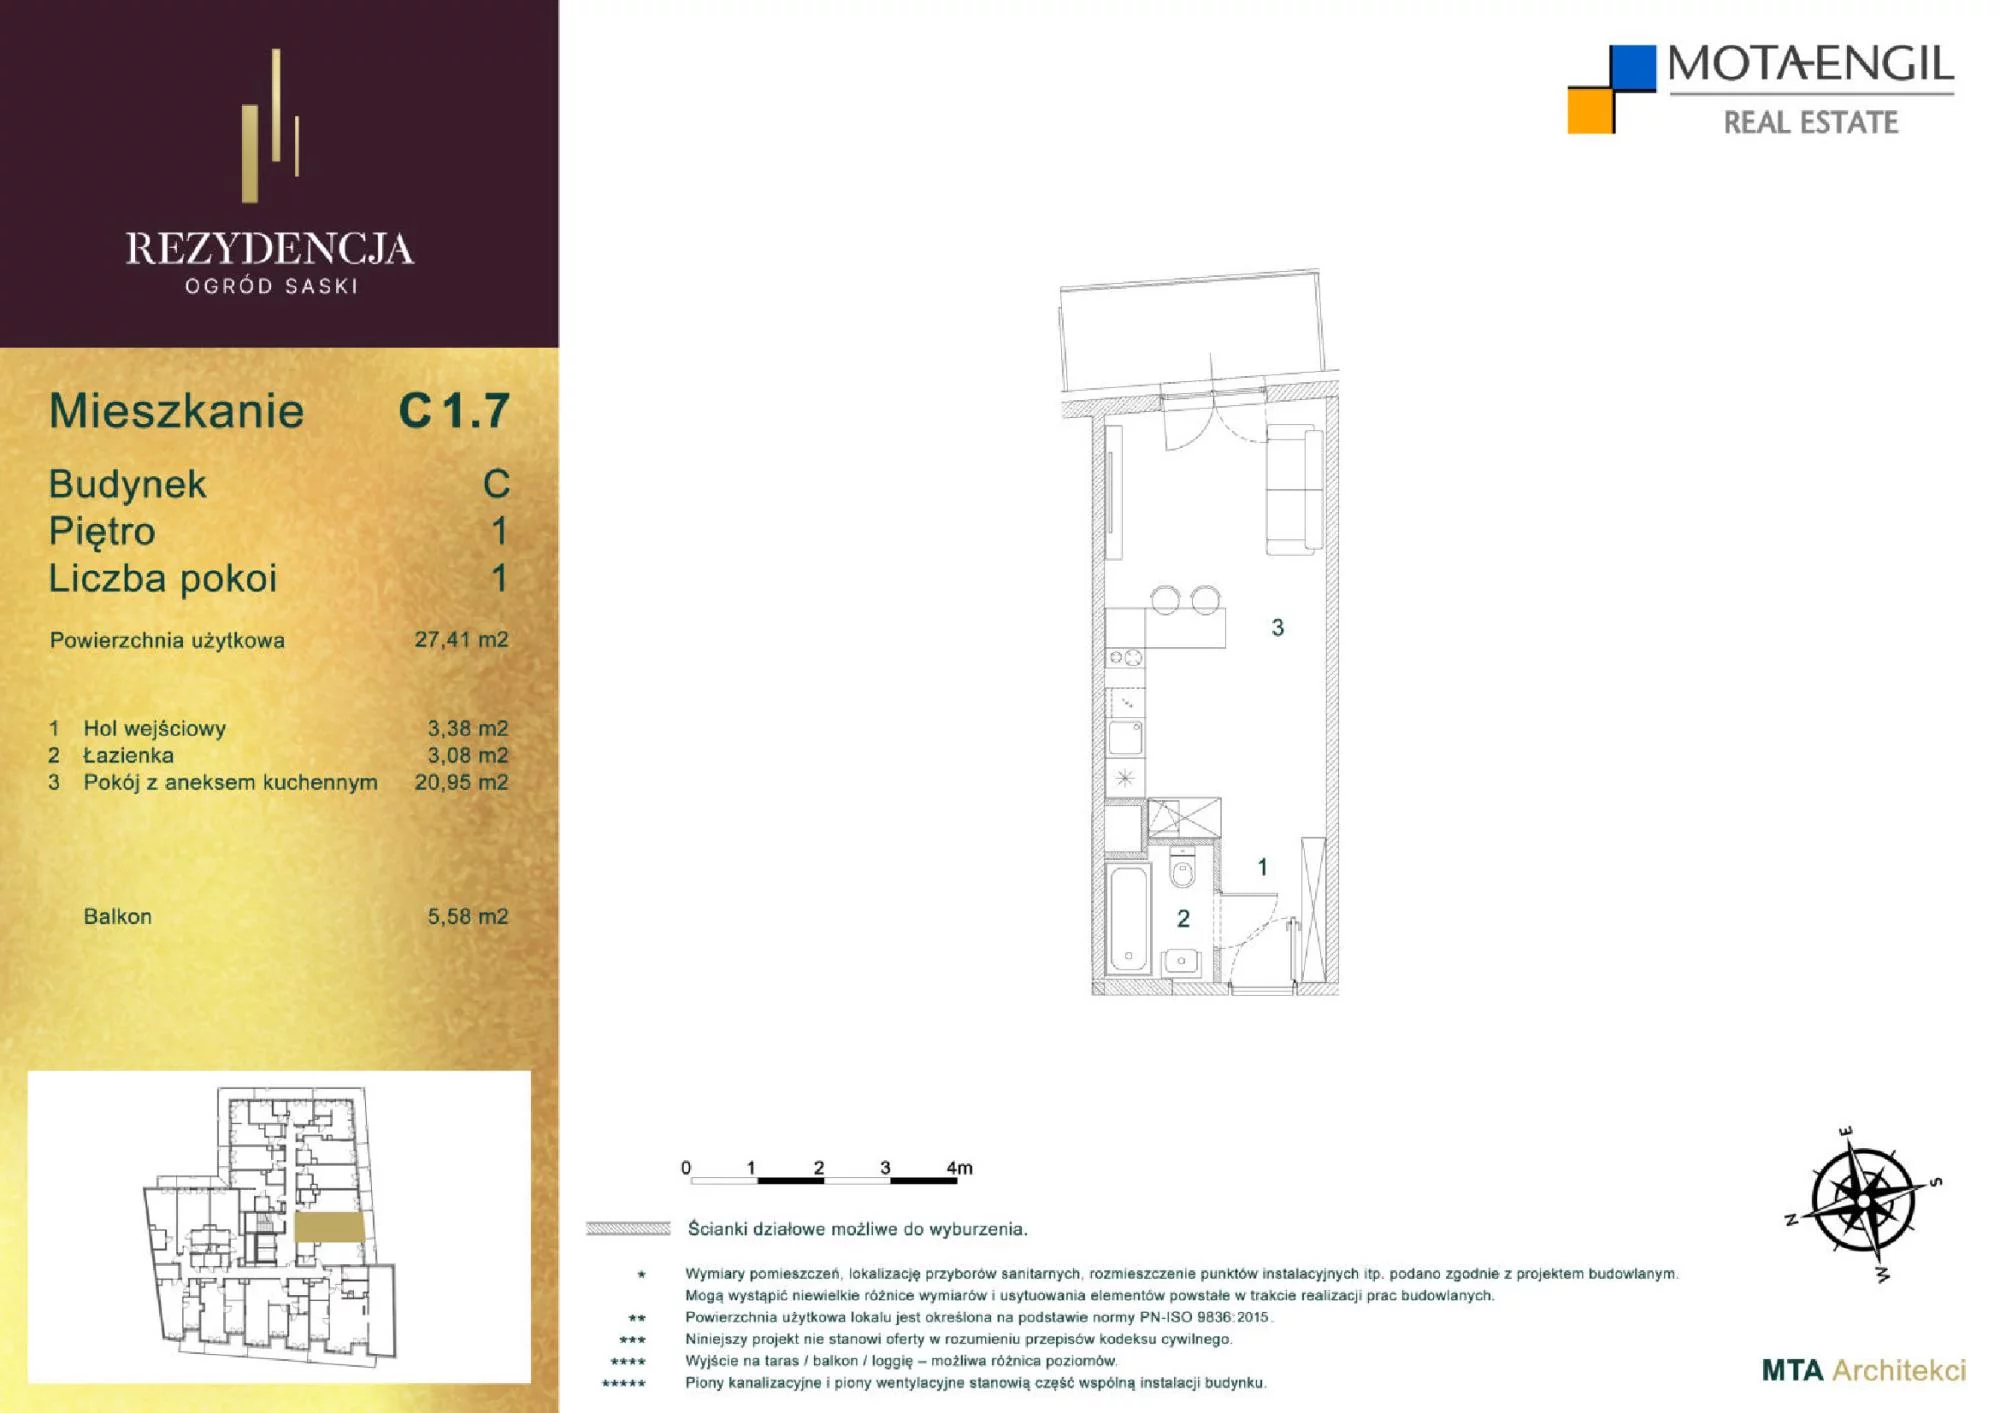 Mieszkanie 27,41 m², piętro 1, oferta nr C1.7, Rezydencja Ogród Saski, Lublin, Wieniawa, ul. Jasna 7, 7A